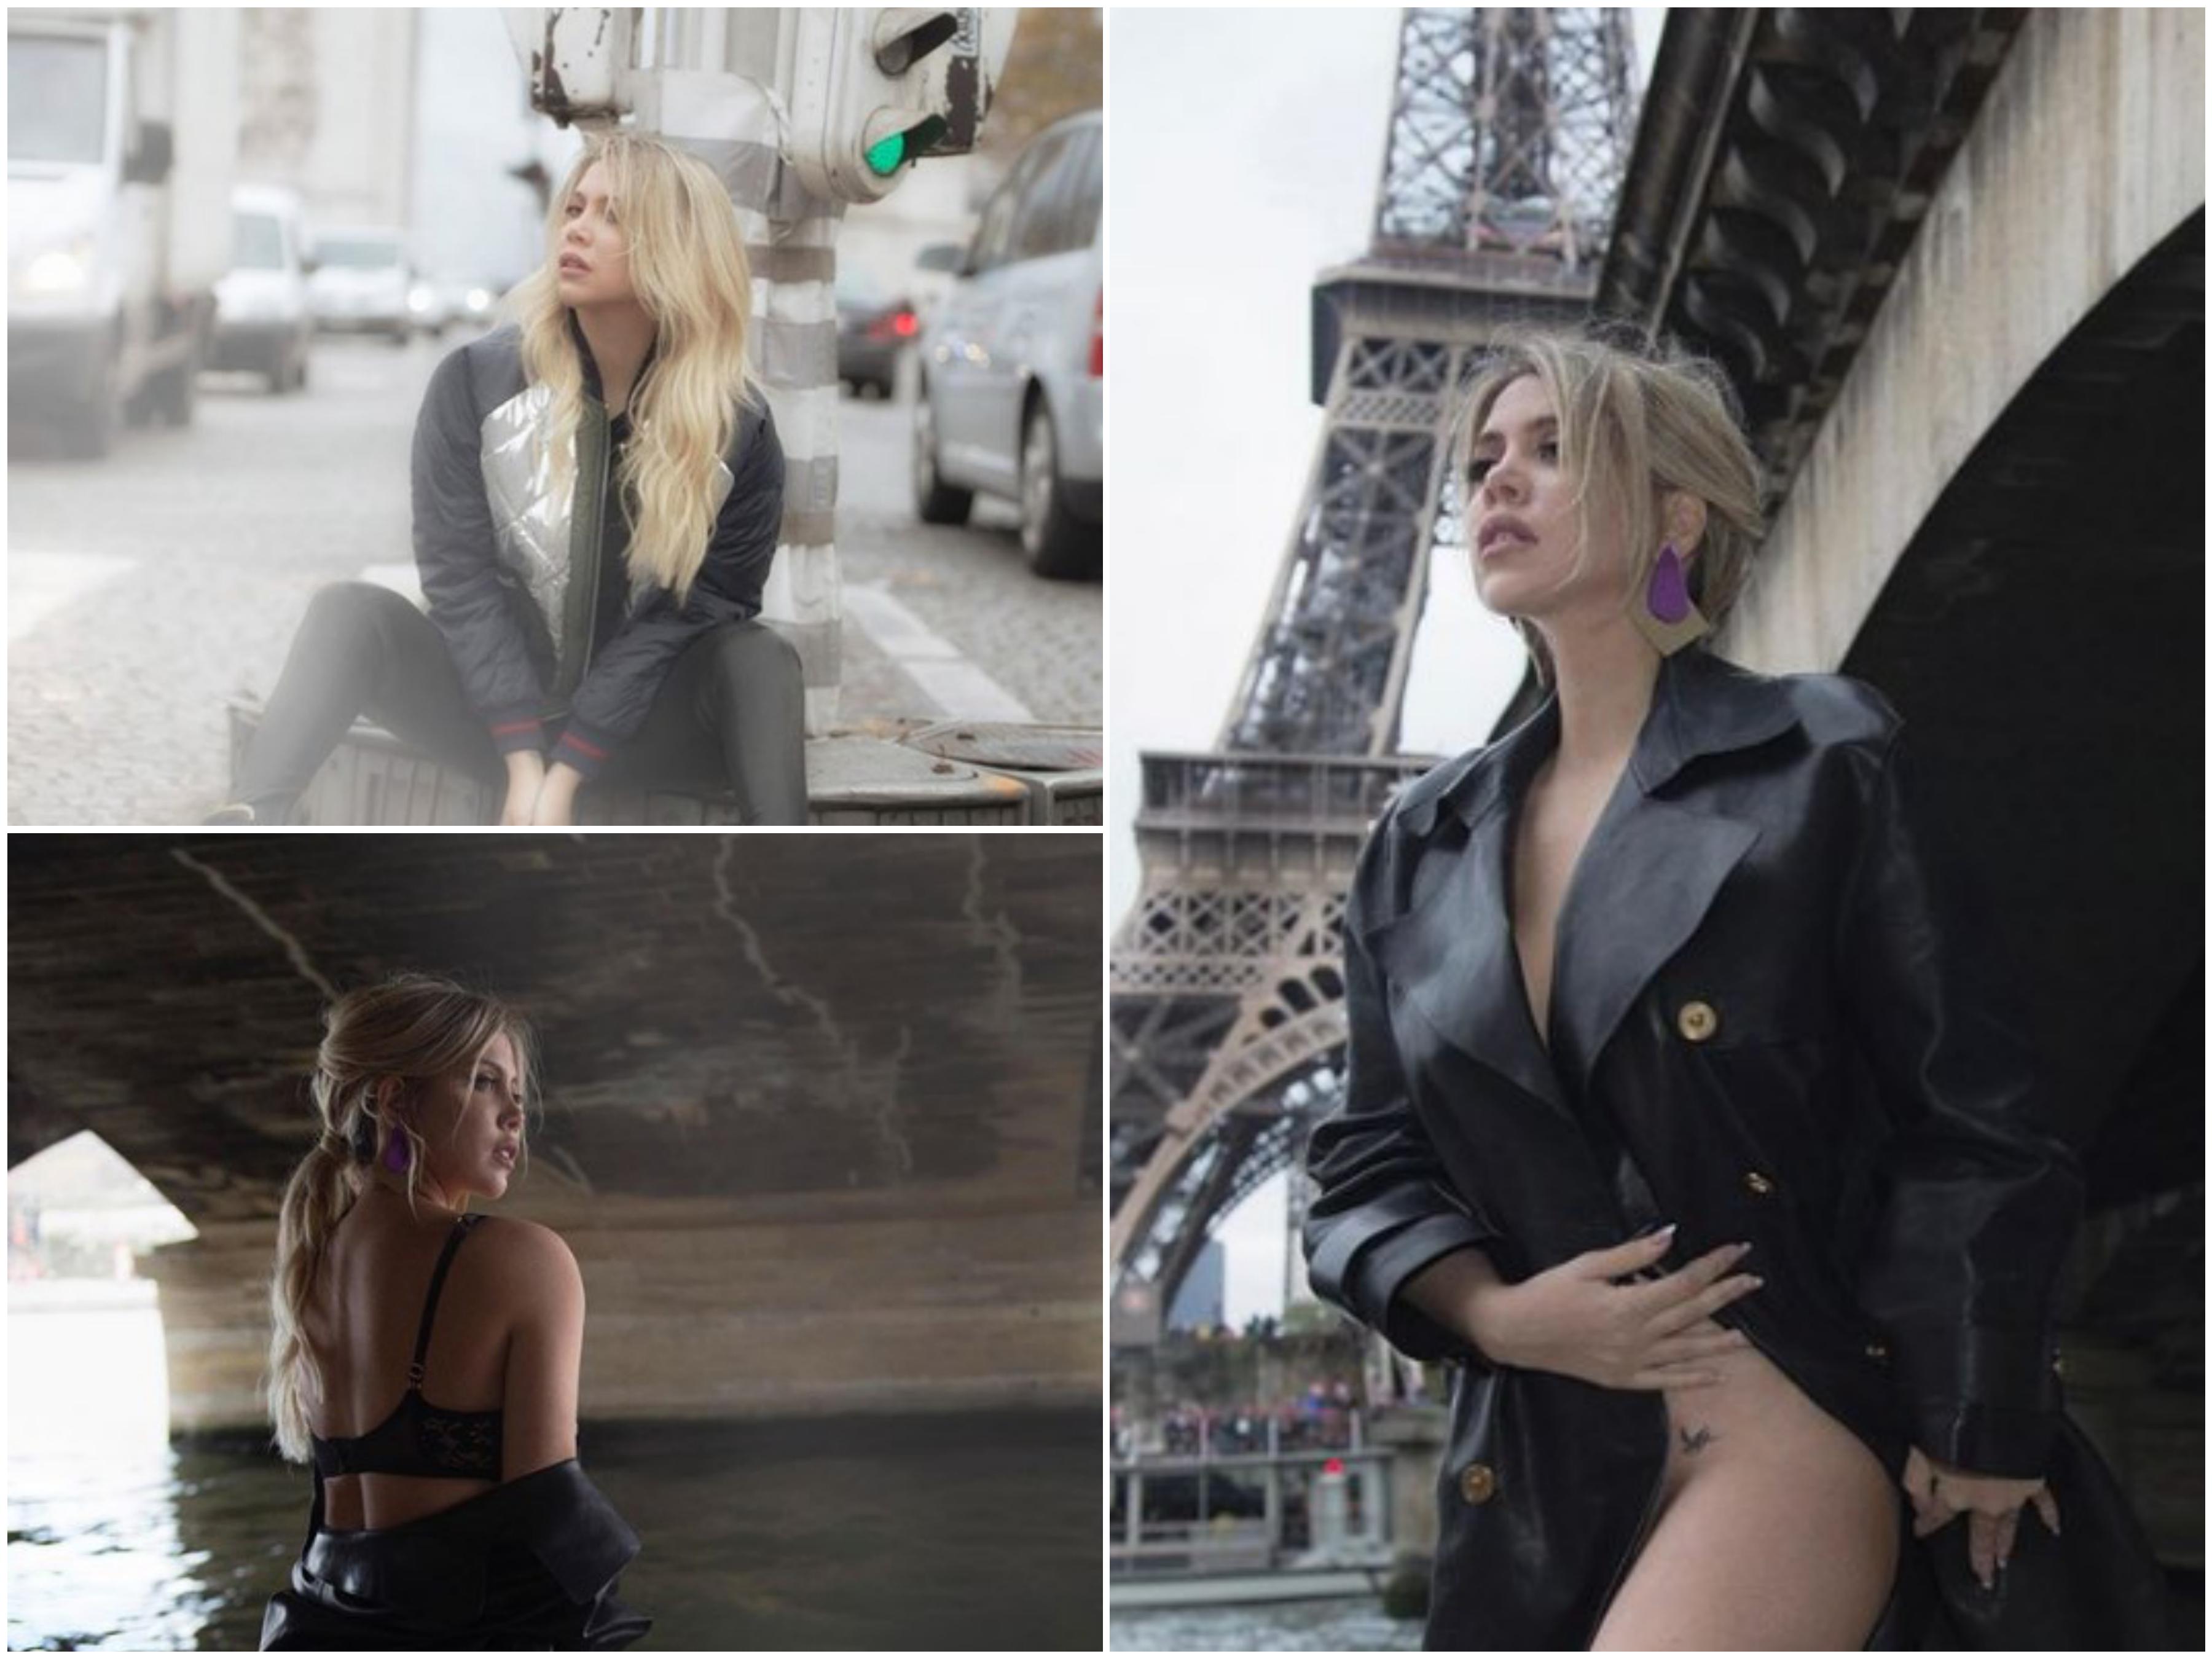 Vanda Ikardi ovjekovječila posjetu Parizu: Slikala se gola ispod Ajfelovog tornja